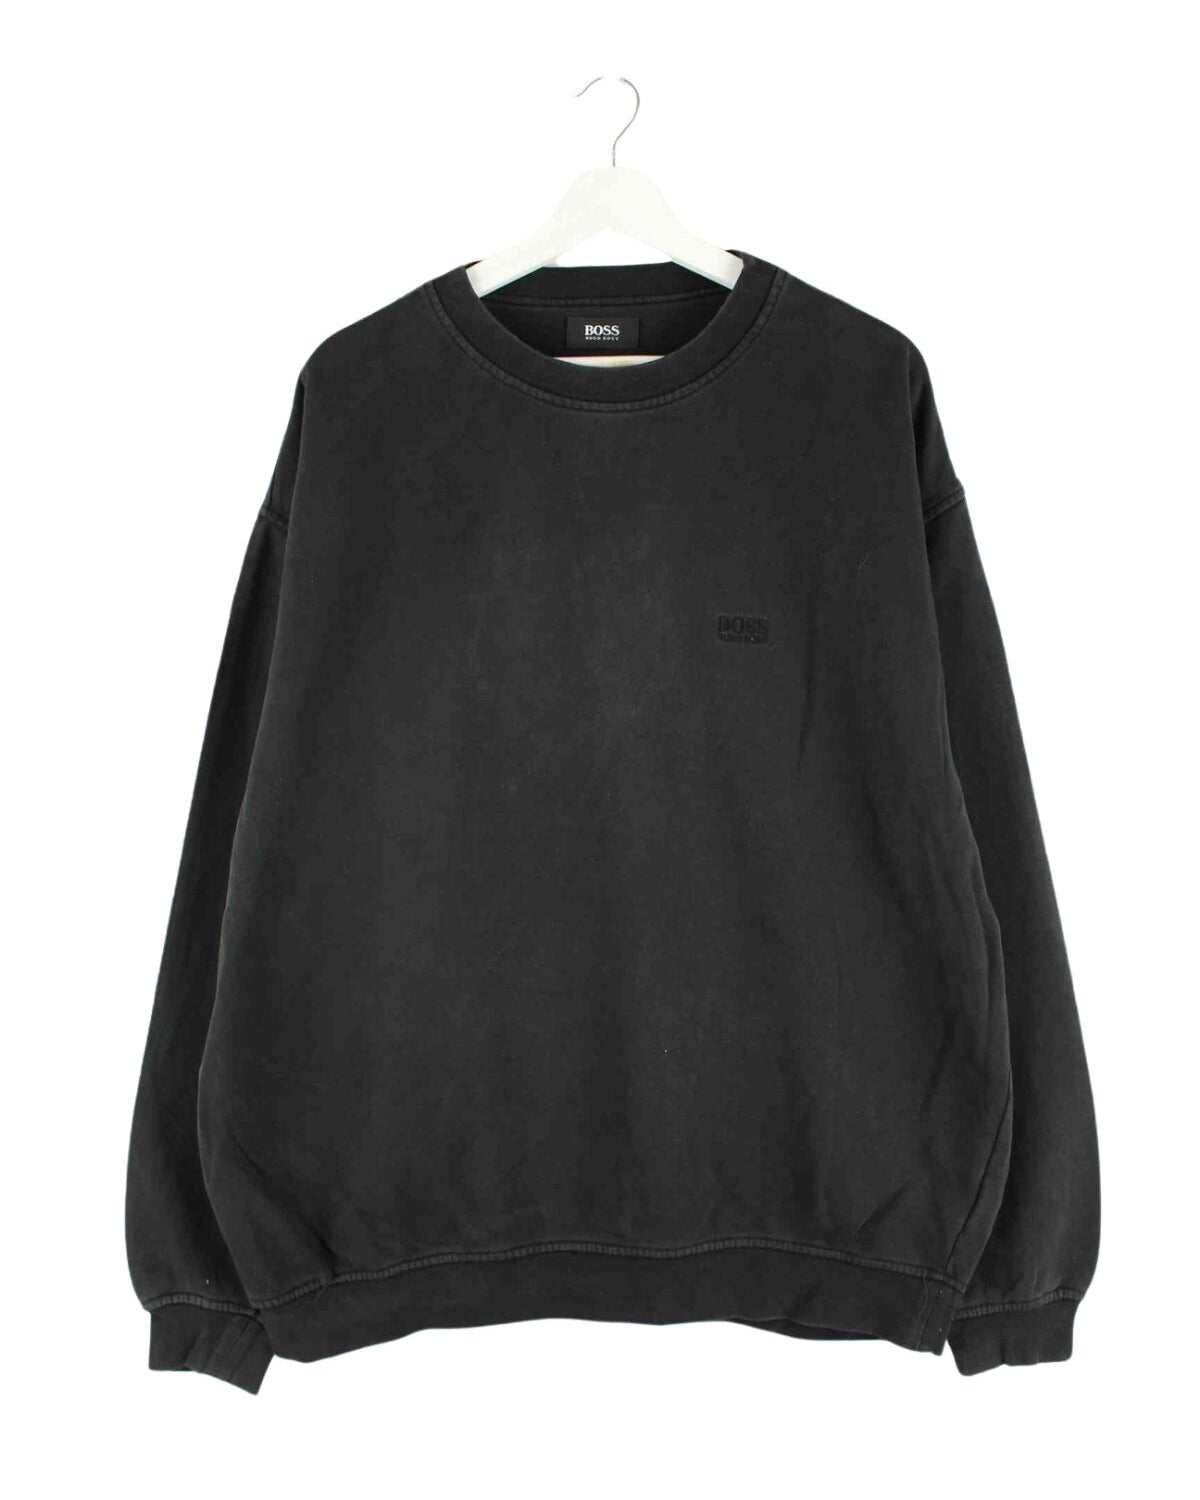 Hugo Boss Basic Sweater Schwarz XL (front image)